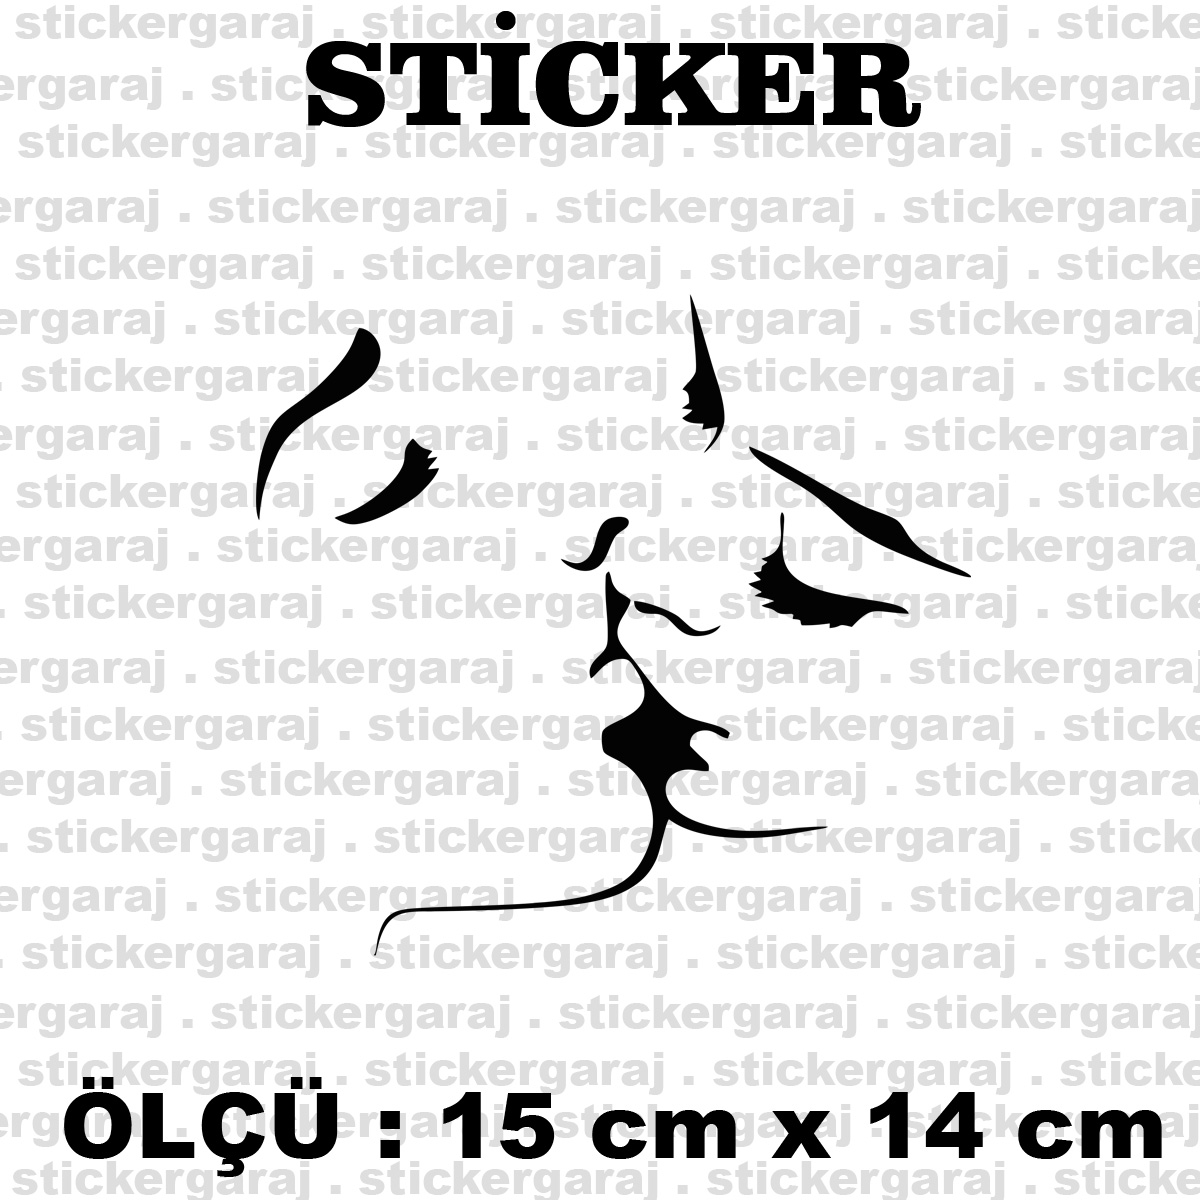 opucuk.cdr 15 14 - Öpücük kiss sticker